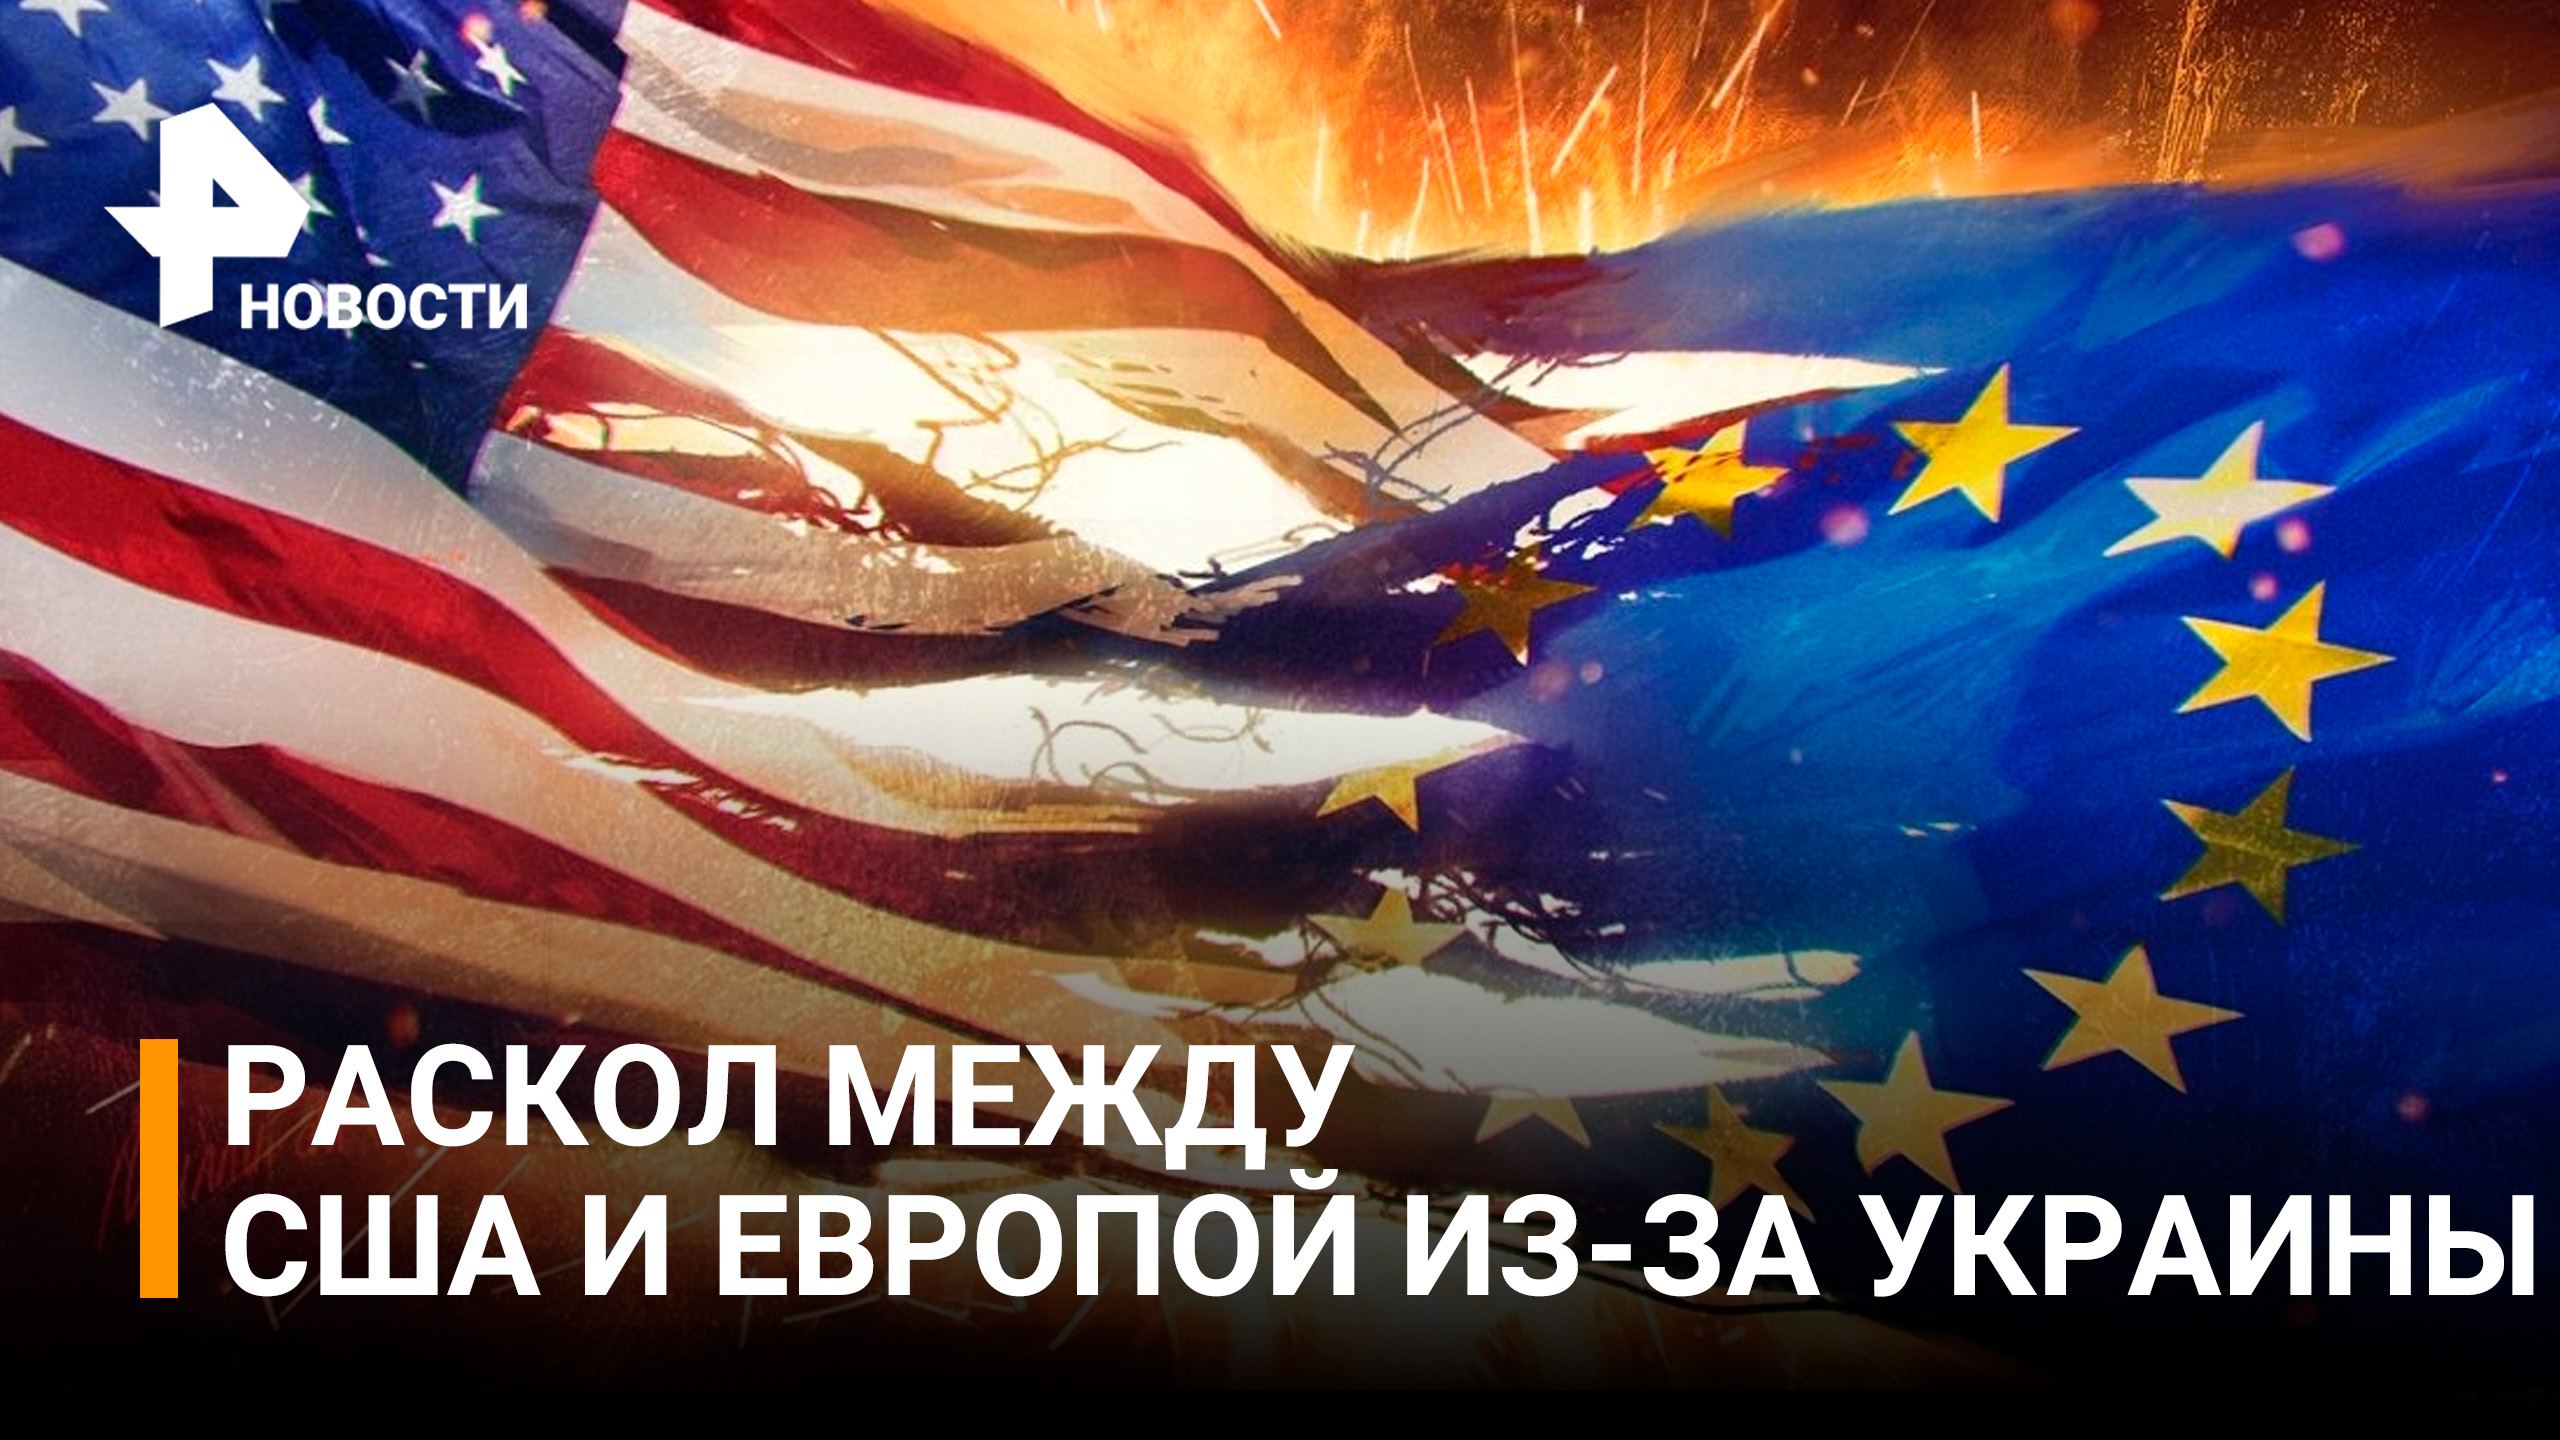 Евросоюз страны сша. ЕС. США против Евросоюза конфликт. Евросоюз в огне. Евросоюз и НАТО.